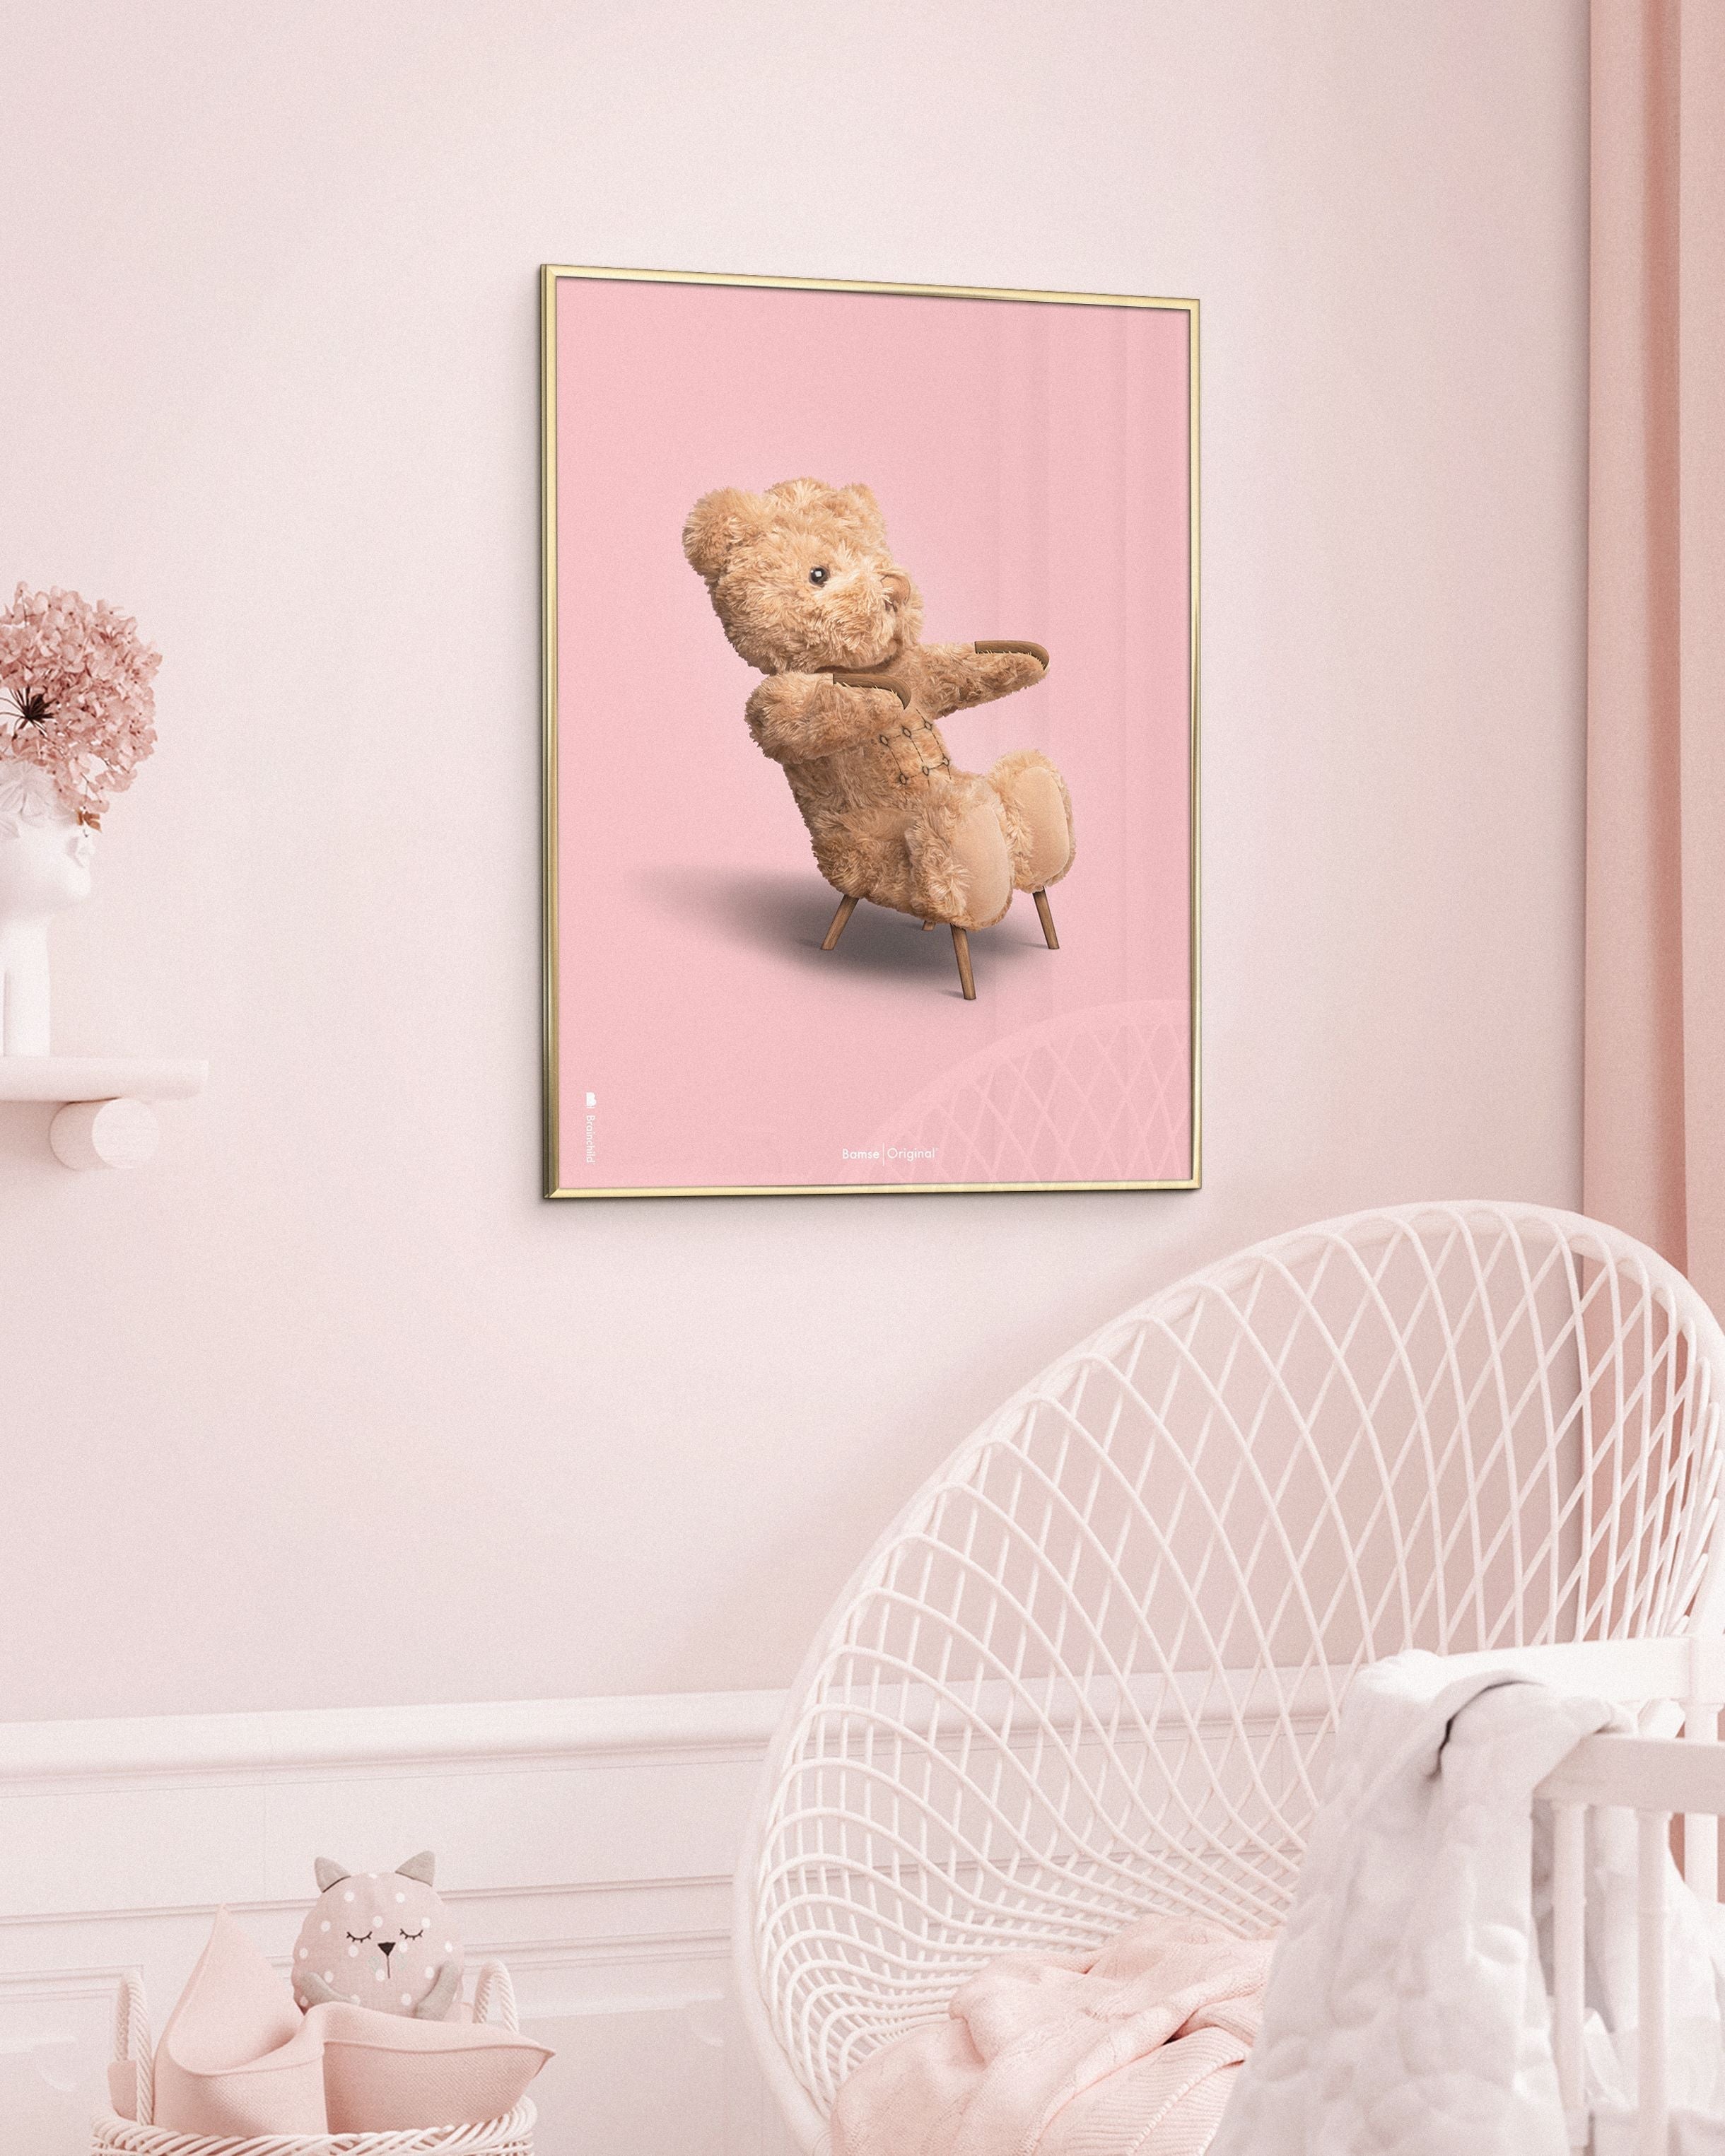 Brainchild Teddy Bear Classic Poster uden ramme 50x70 cm, lyserød baggrund